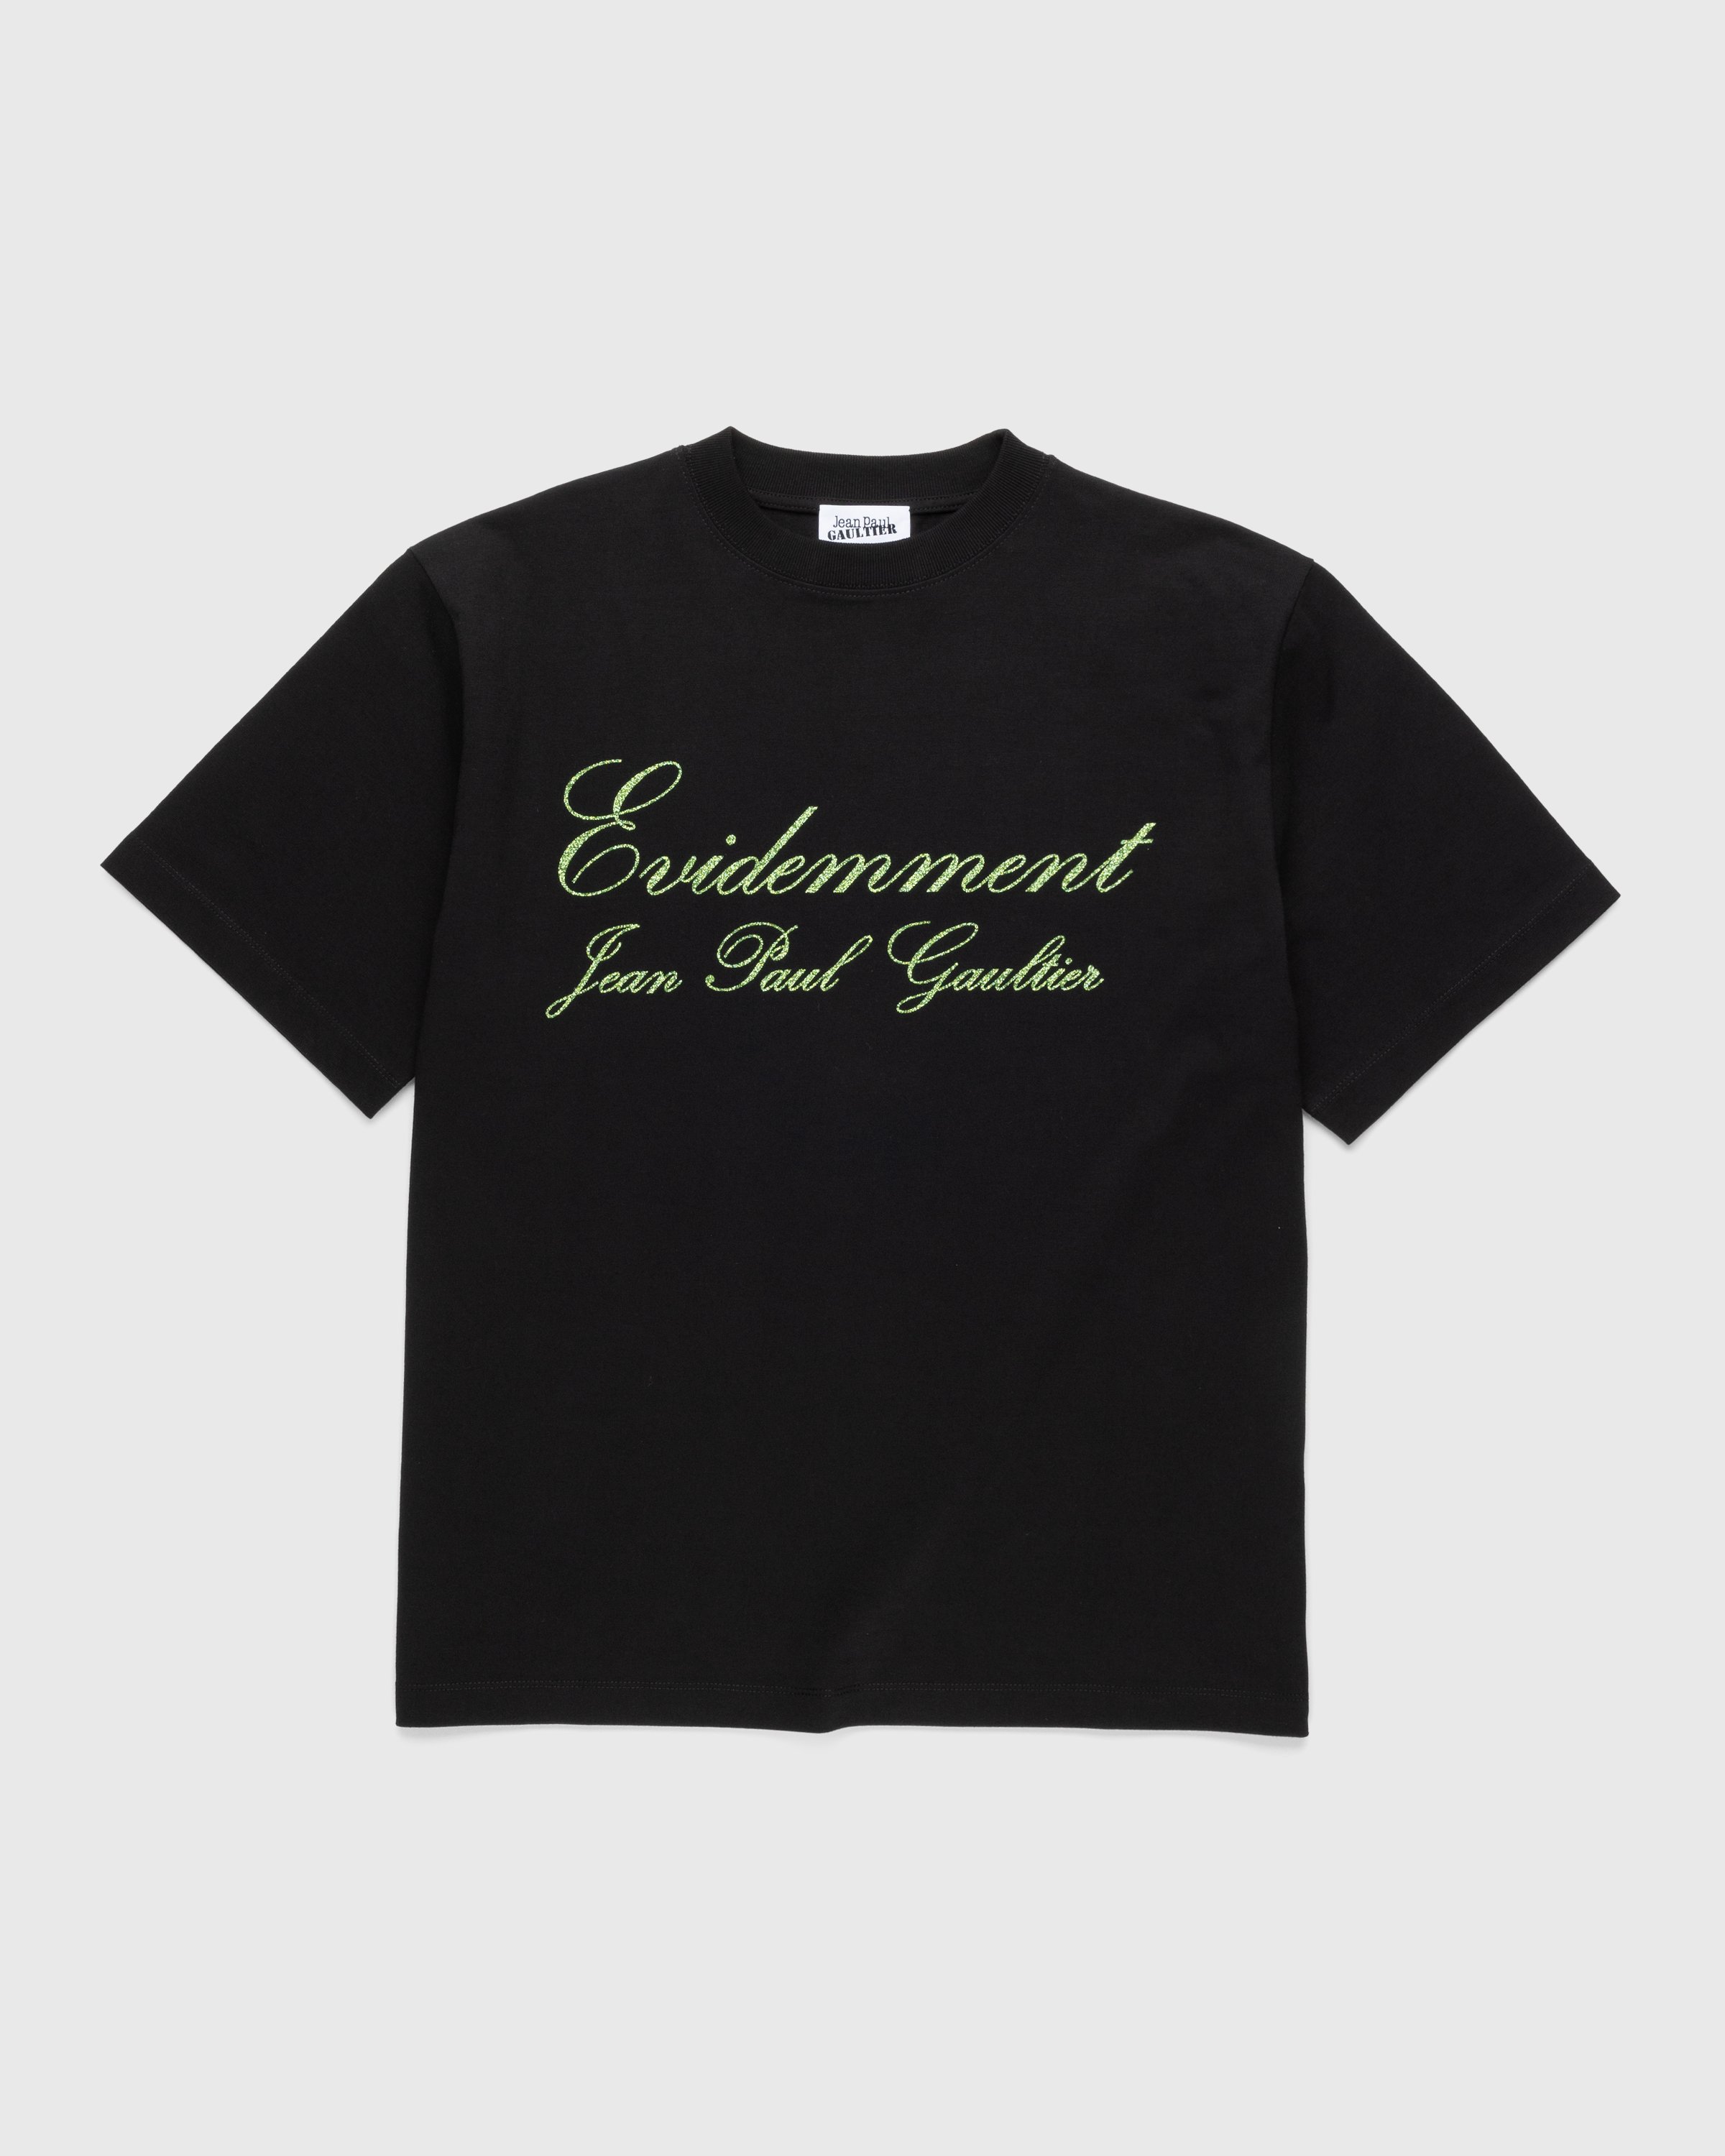 Jean Paul Gaultier - Évidemment T-Shirt Black - Clothing - Black - Image 1